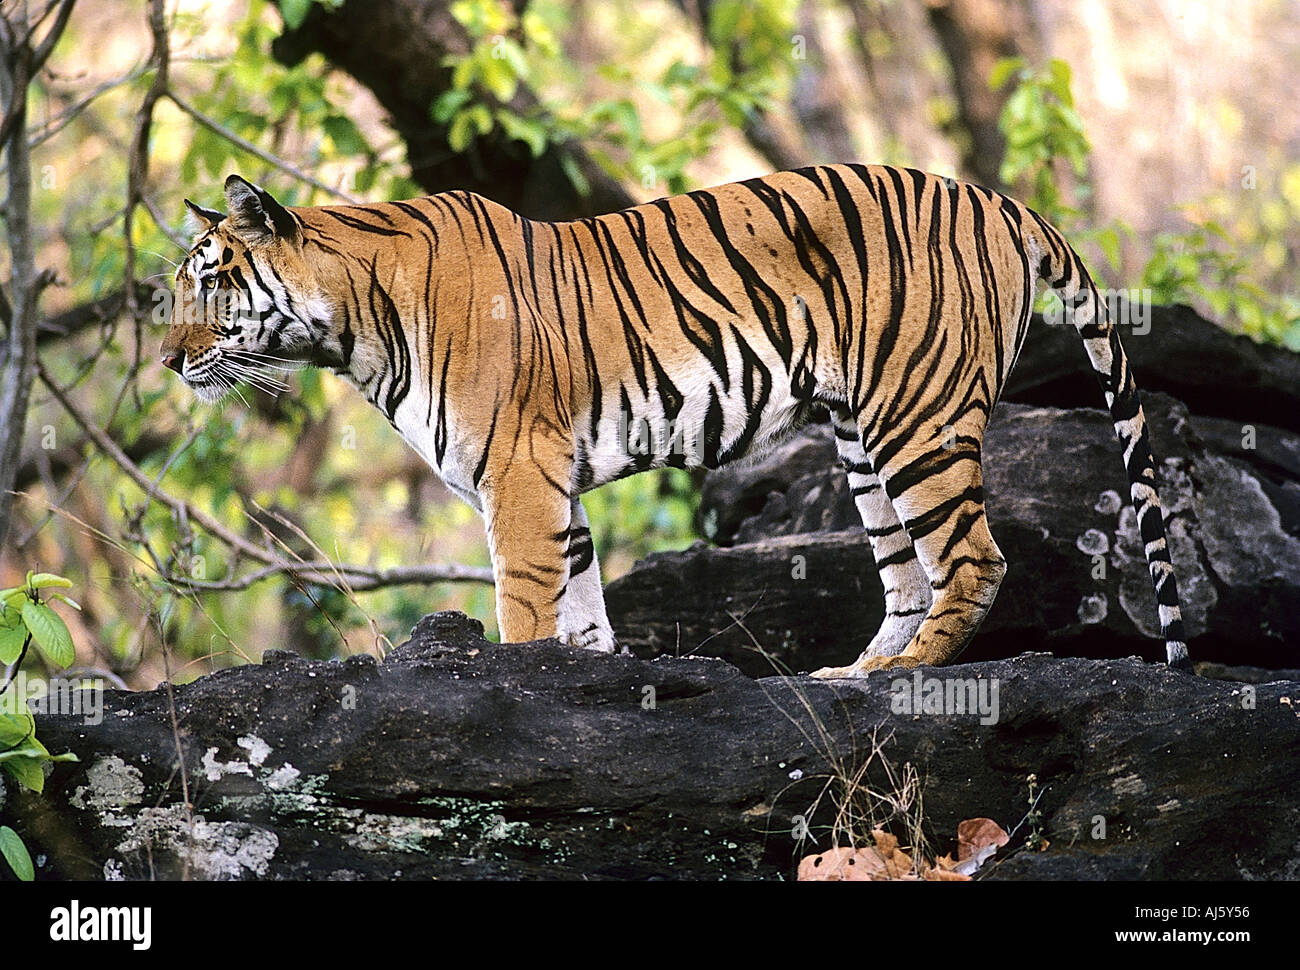 SNA71810 Tiger profilo permanente Bandhavgarh National Park in Madhya Pradesh India Foto Stock